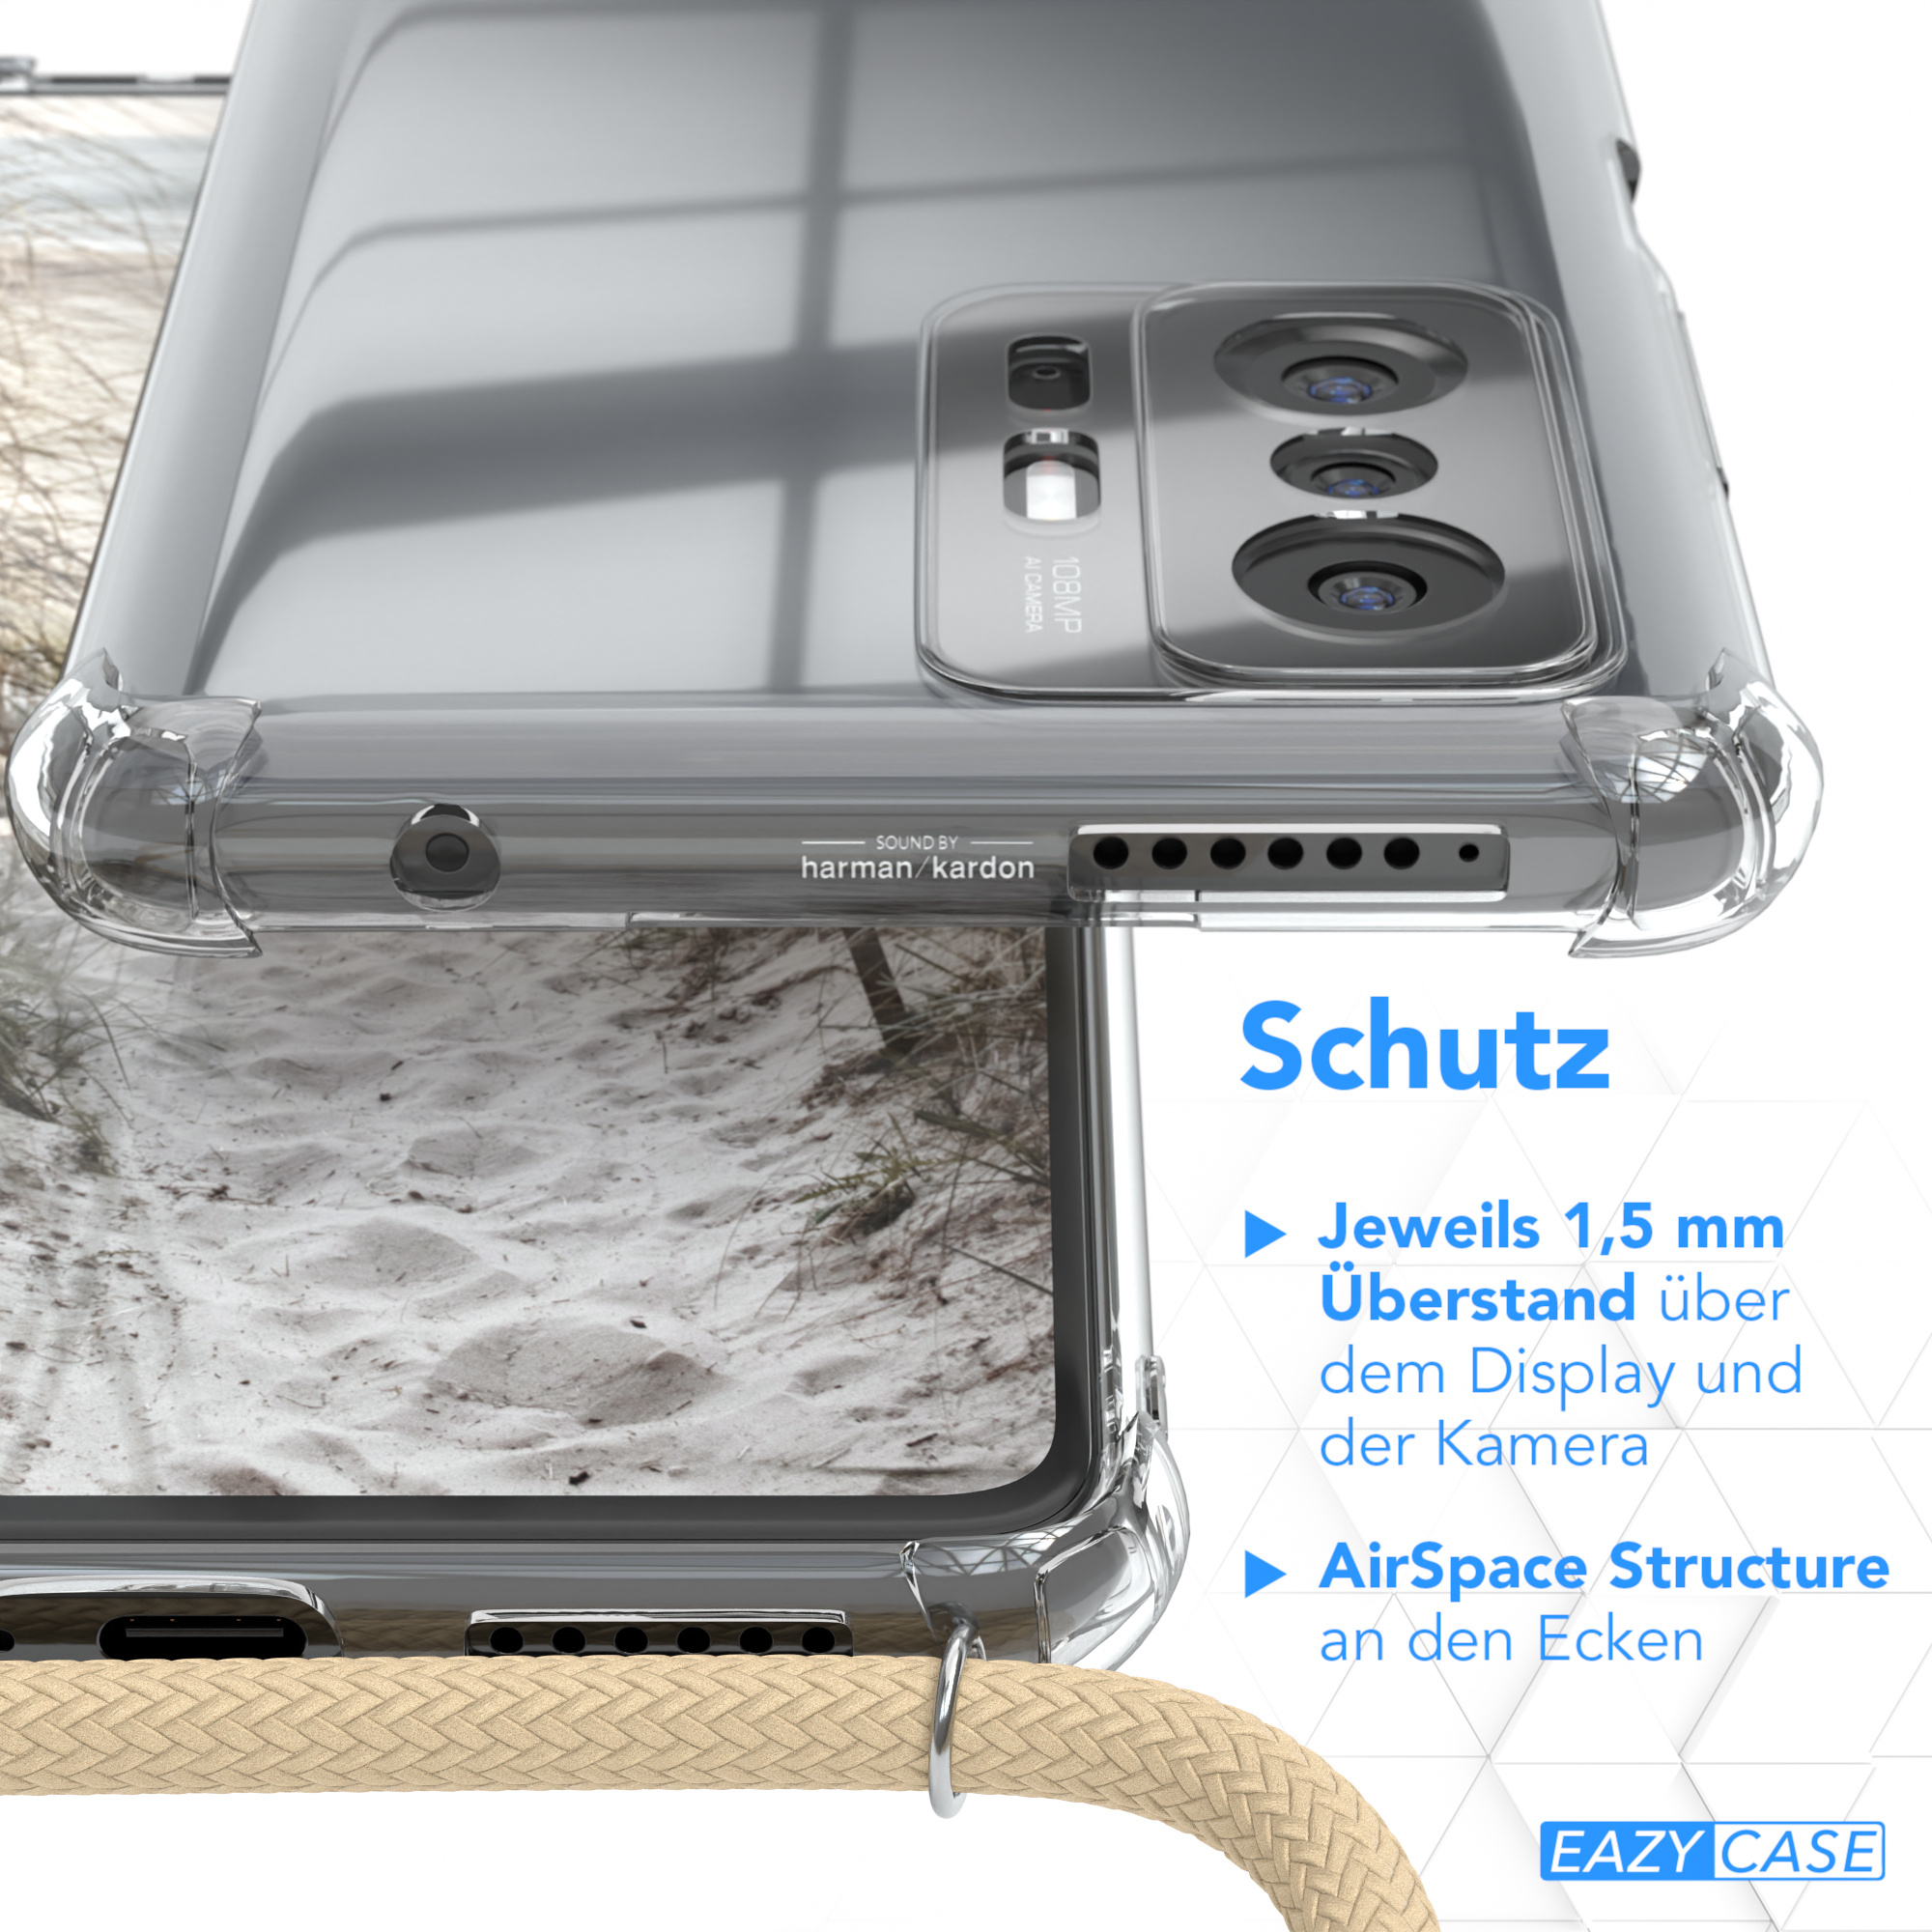 EAZY CASE Clear Cover mit Pro 5G, Umhängeband, Beige / Taupe 11T Xiaomi, 11T Umhängetasche